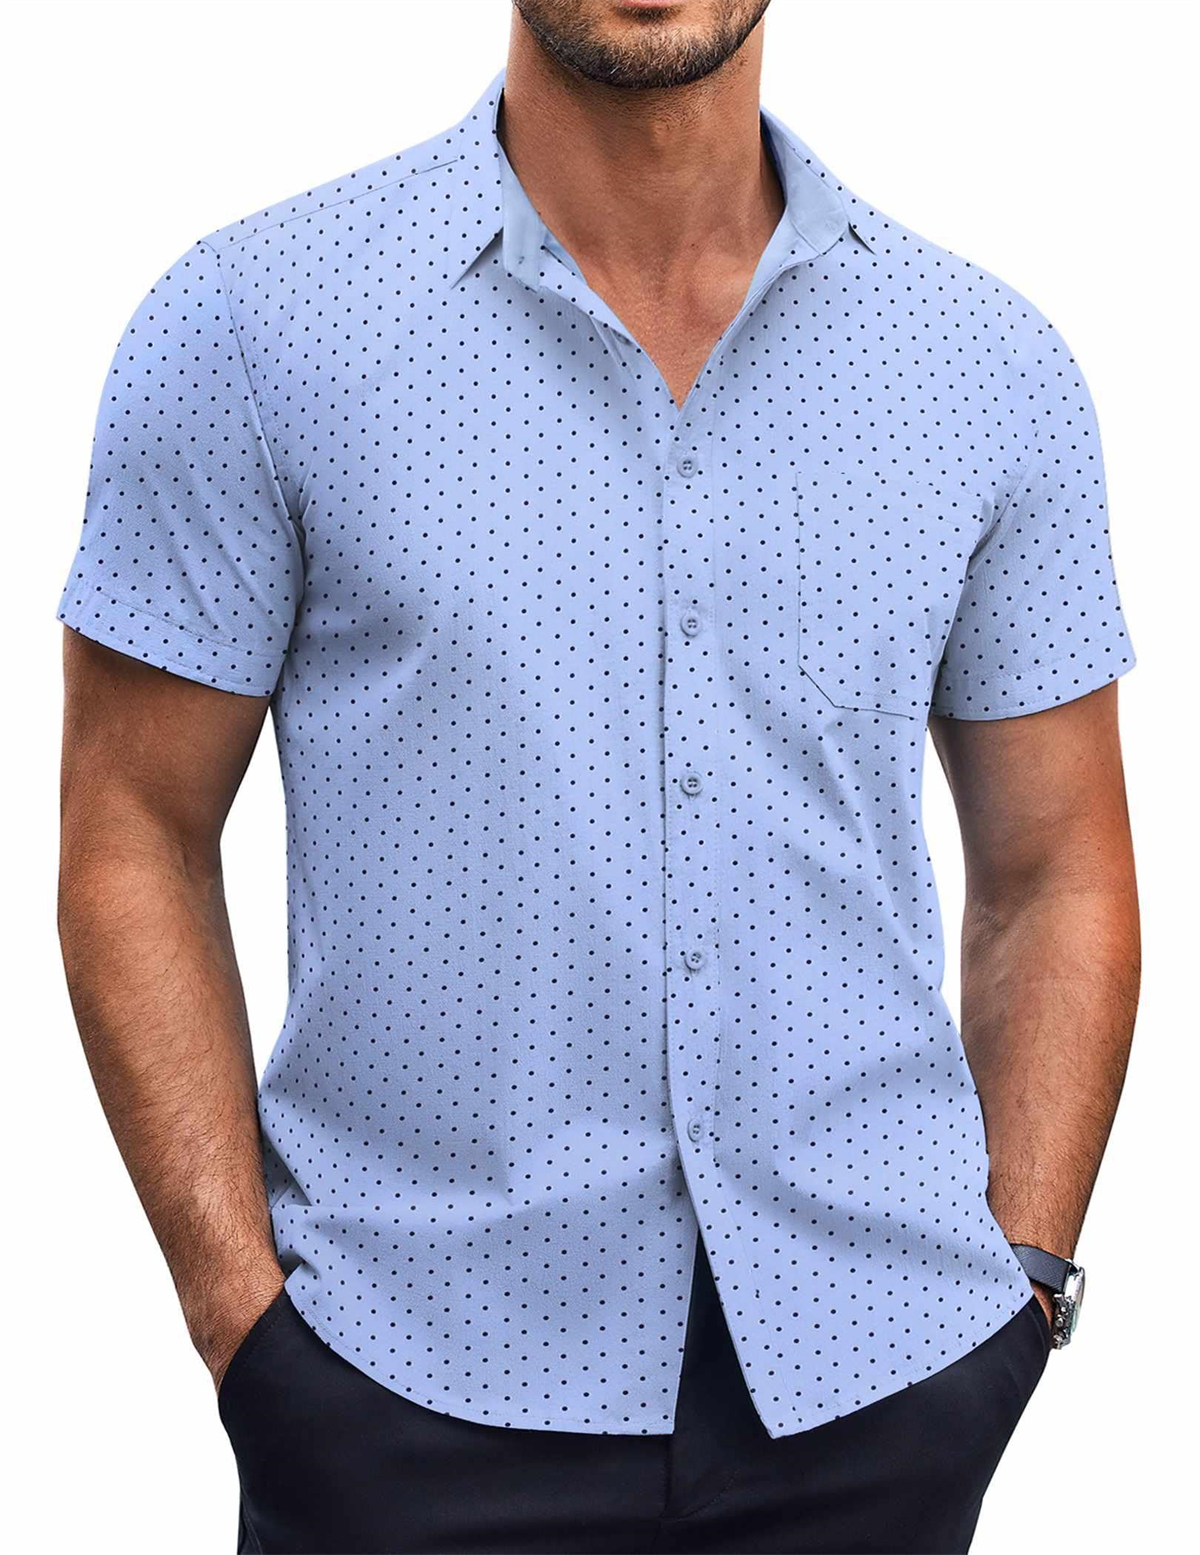 Men's Elegant Polka Dot Classic Print Wrinkle Resistant Basic Classic Short Sleeve Shirt-Garamode